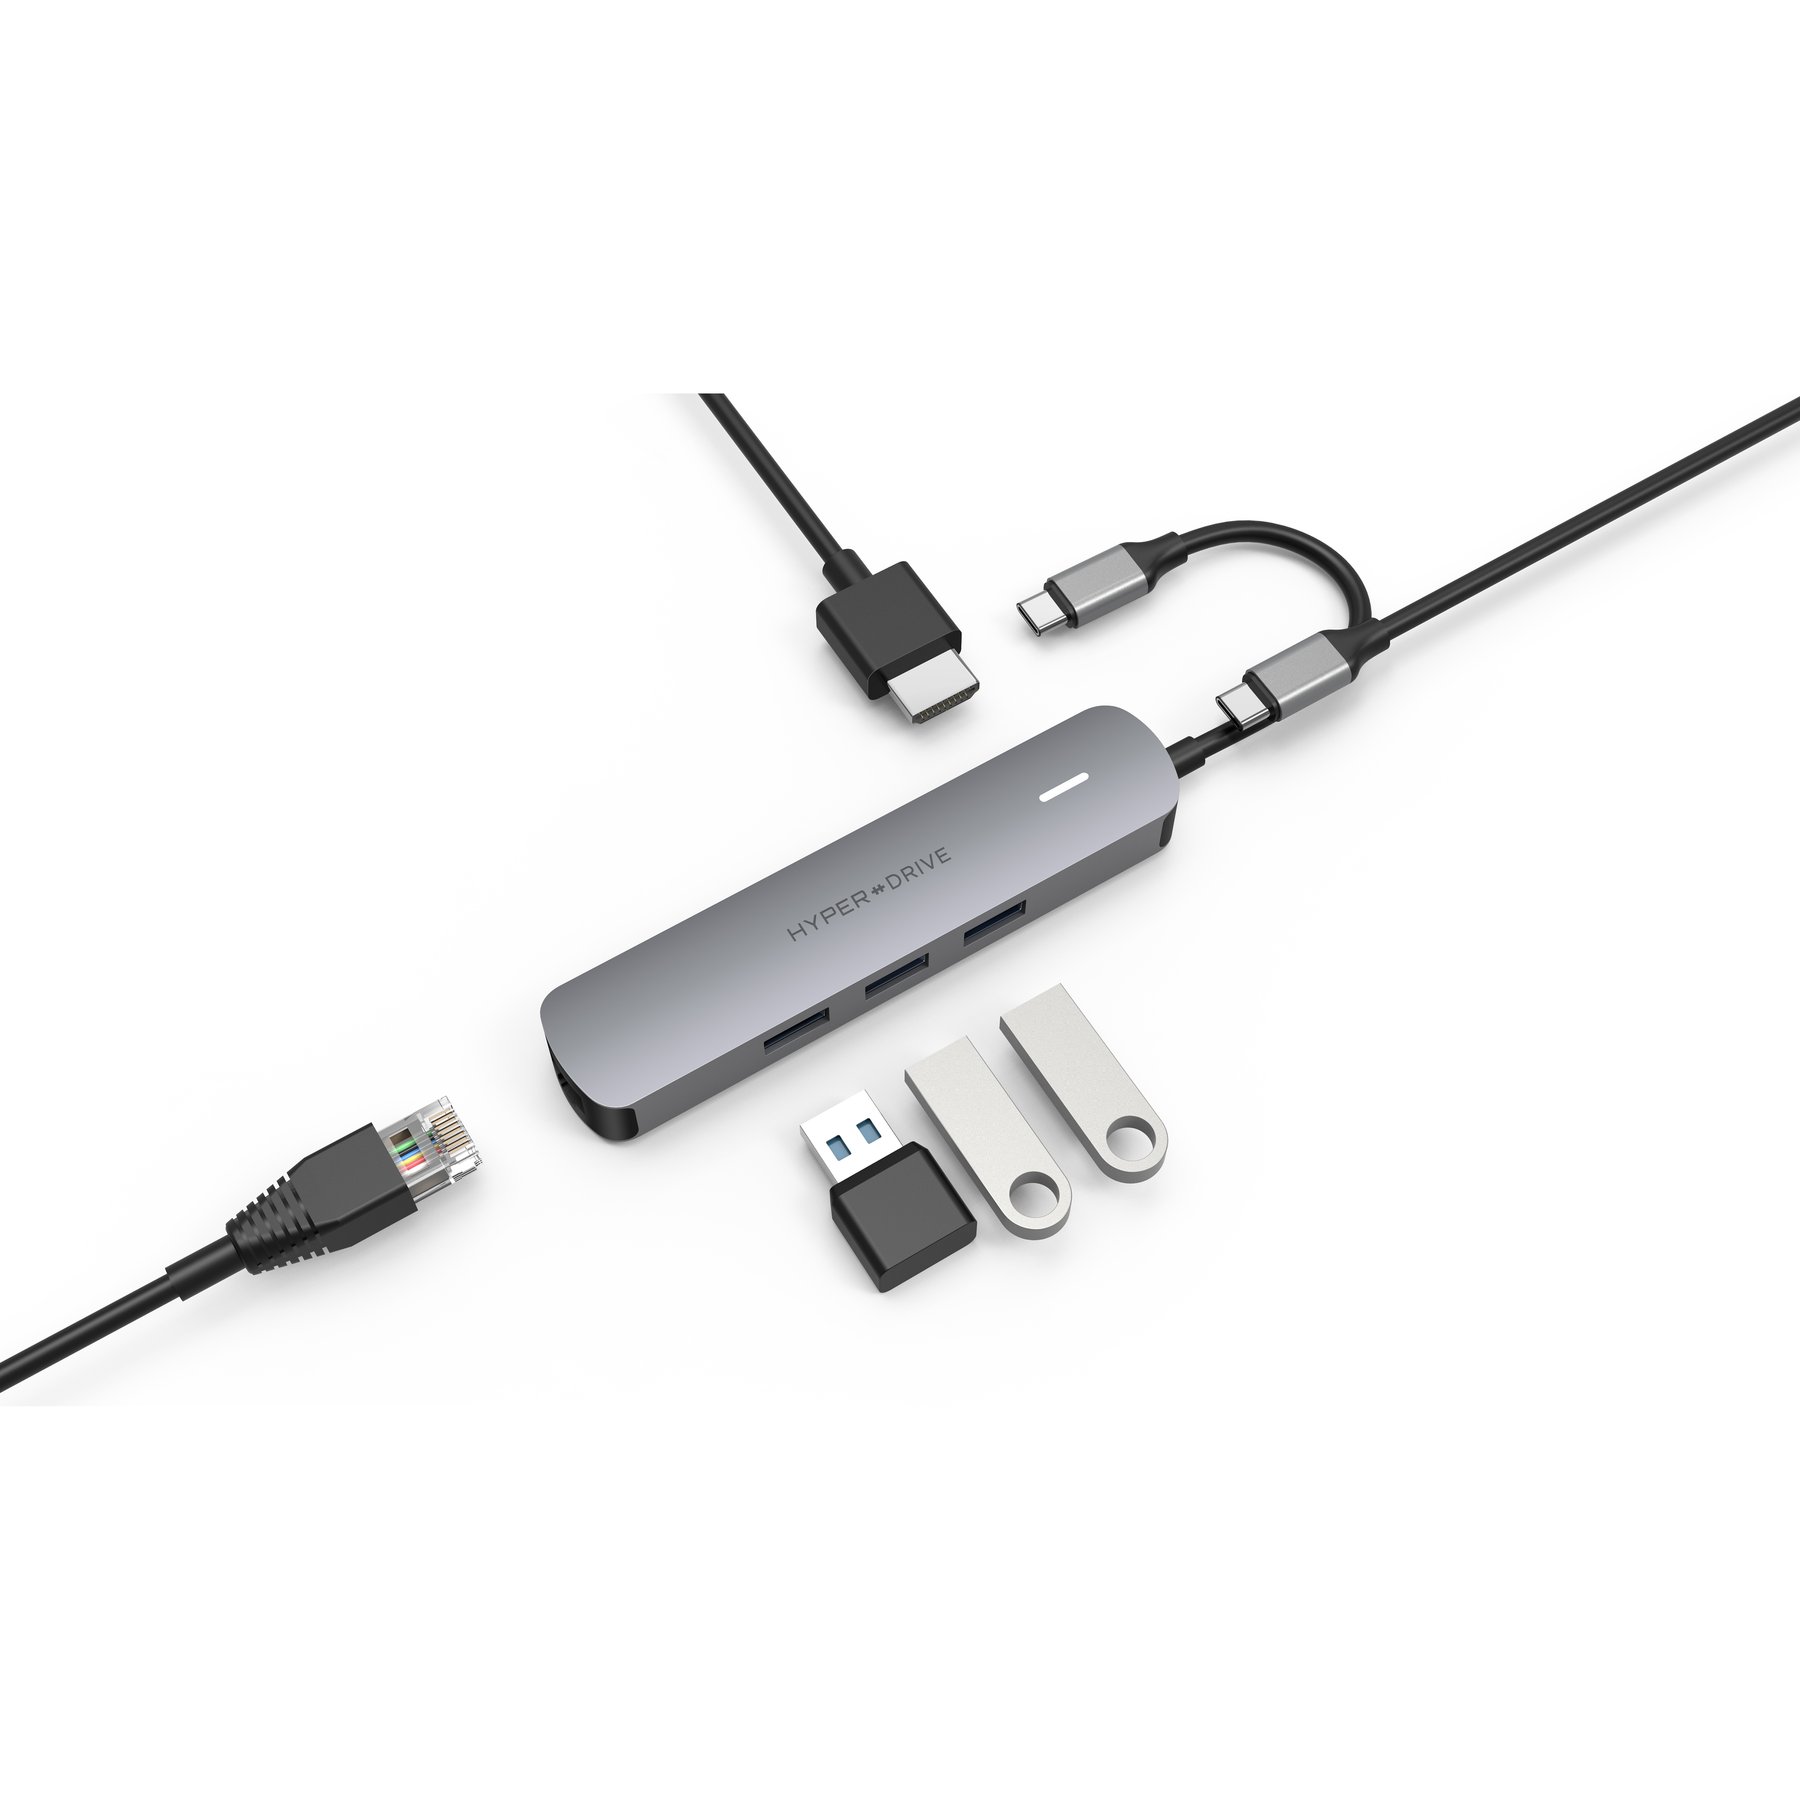 Cổng Chuyển Đổi HYPERDRIVE 4K HDMI 6-In-1 Usb-C HUB For MACBOOK, Surface, Ultrabook, Chromebook, Pc And Usb-C Devices - HD233B - Hàng Chính Hãng